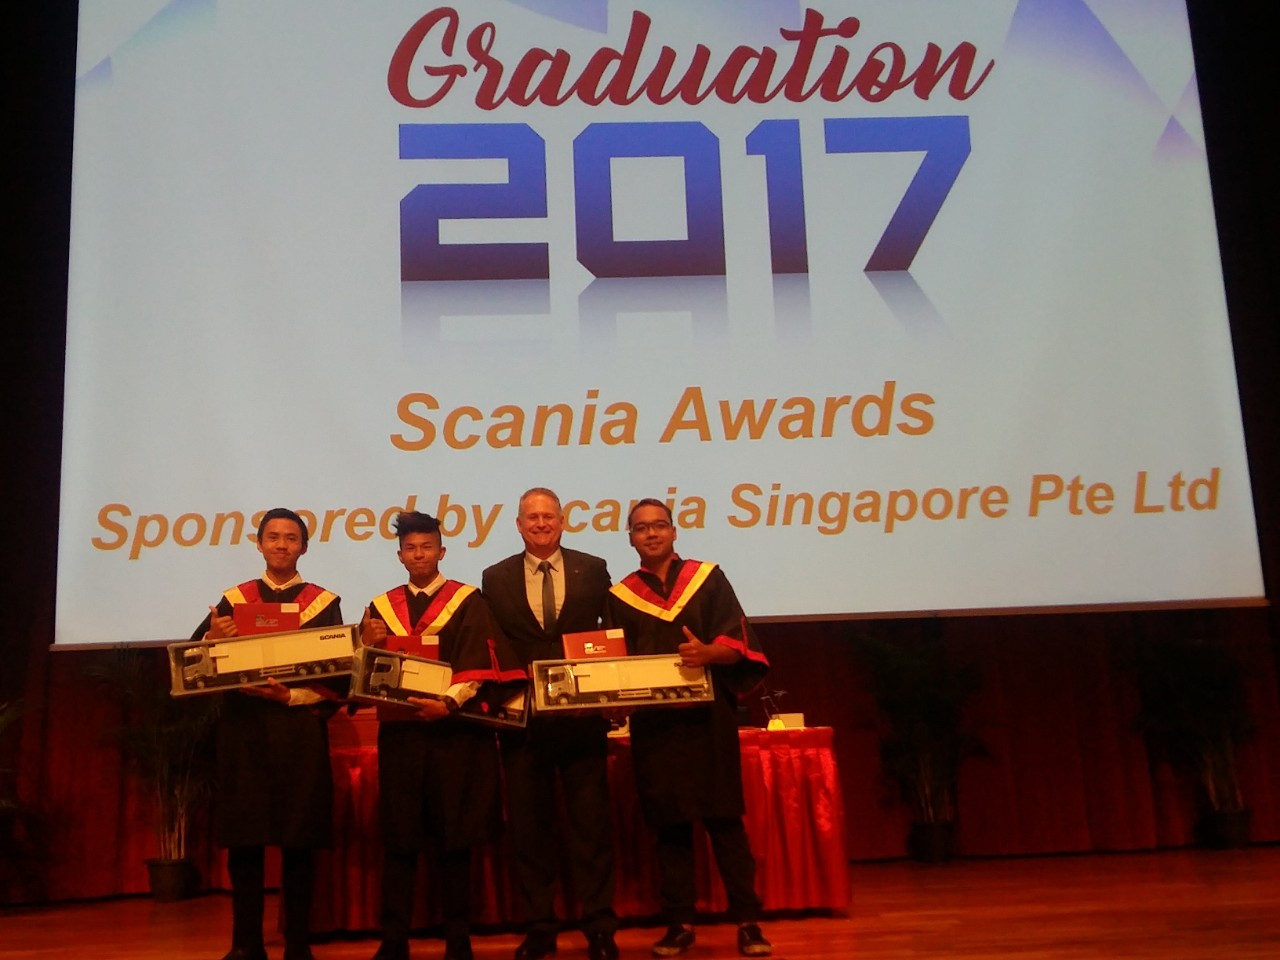 TOP ITE GRADUATES CONTINUE TO RECEIVE SCANIA SINGAPORE AWARDS 2017